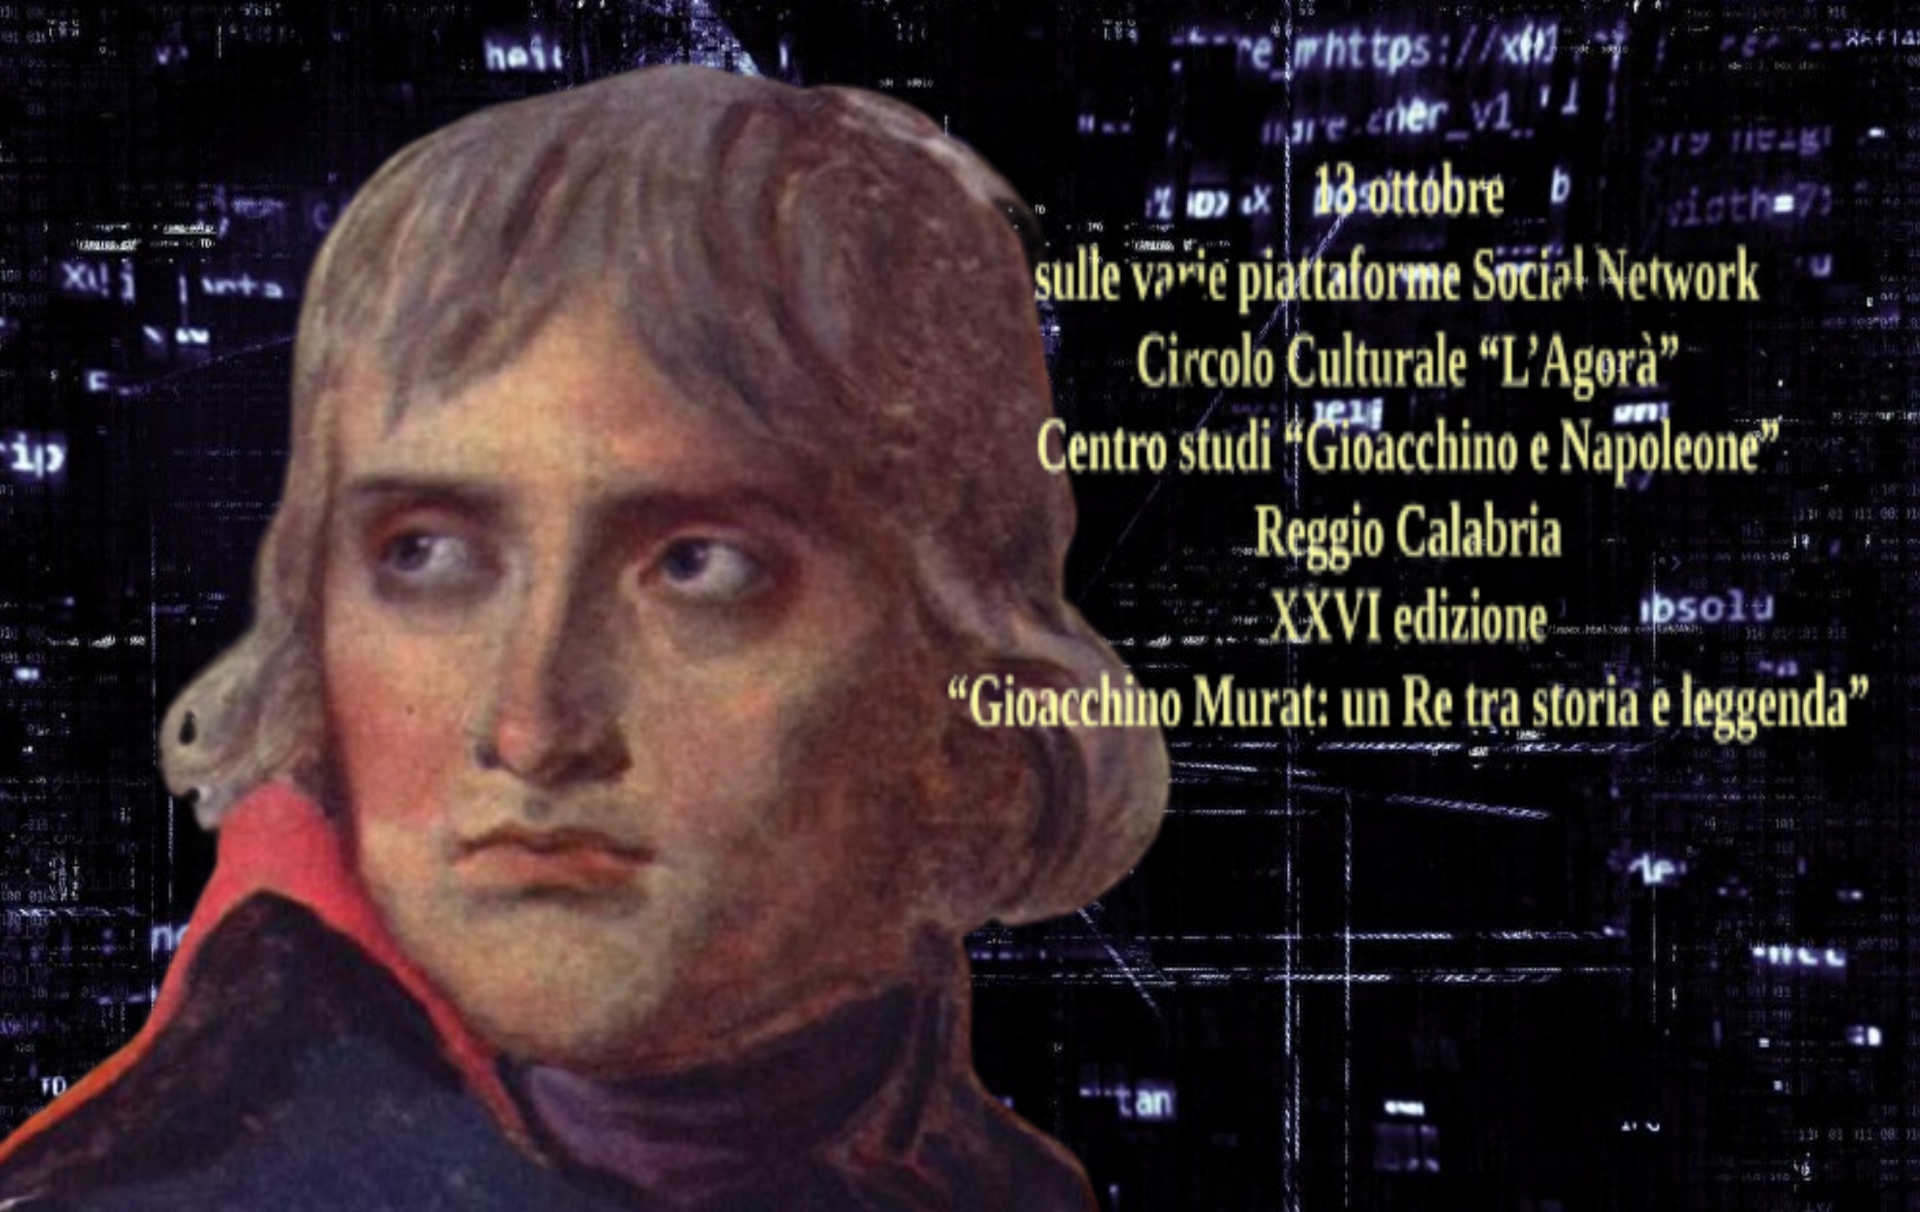 A Reggio Calabria la XXVI edizione sul periodo napoleonico